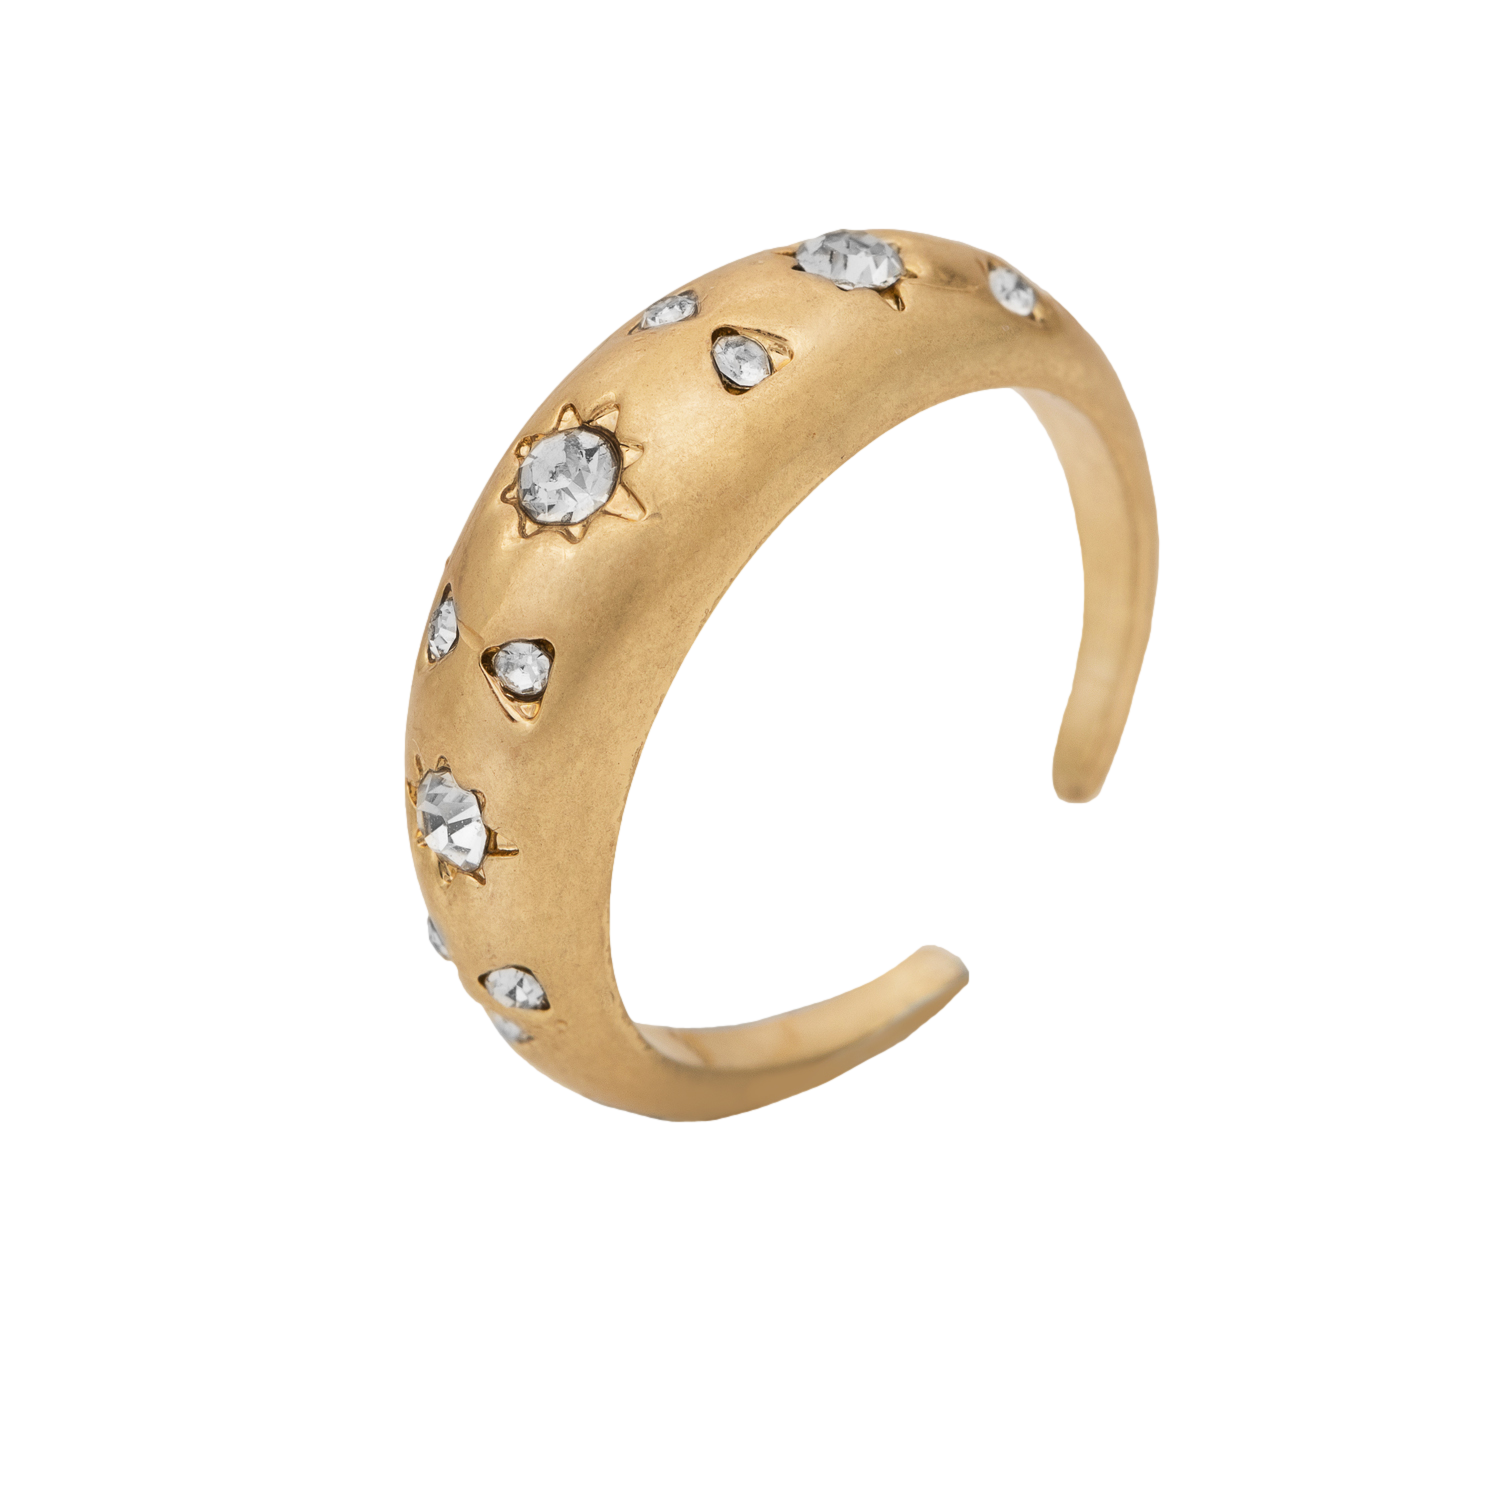 KT Bibi Bijoux Gold Stardust Ring S/M